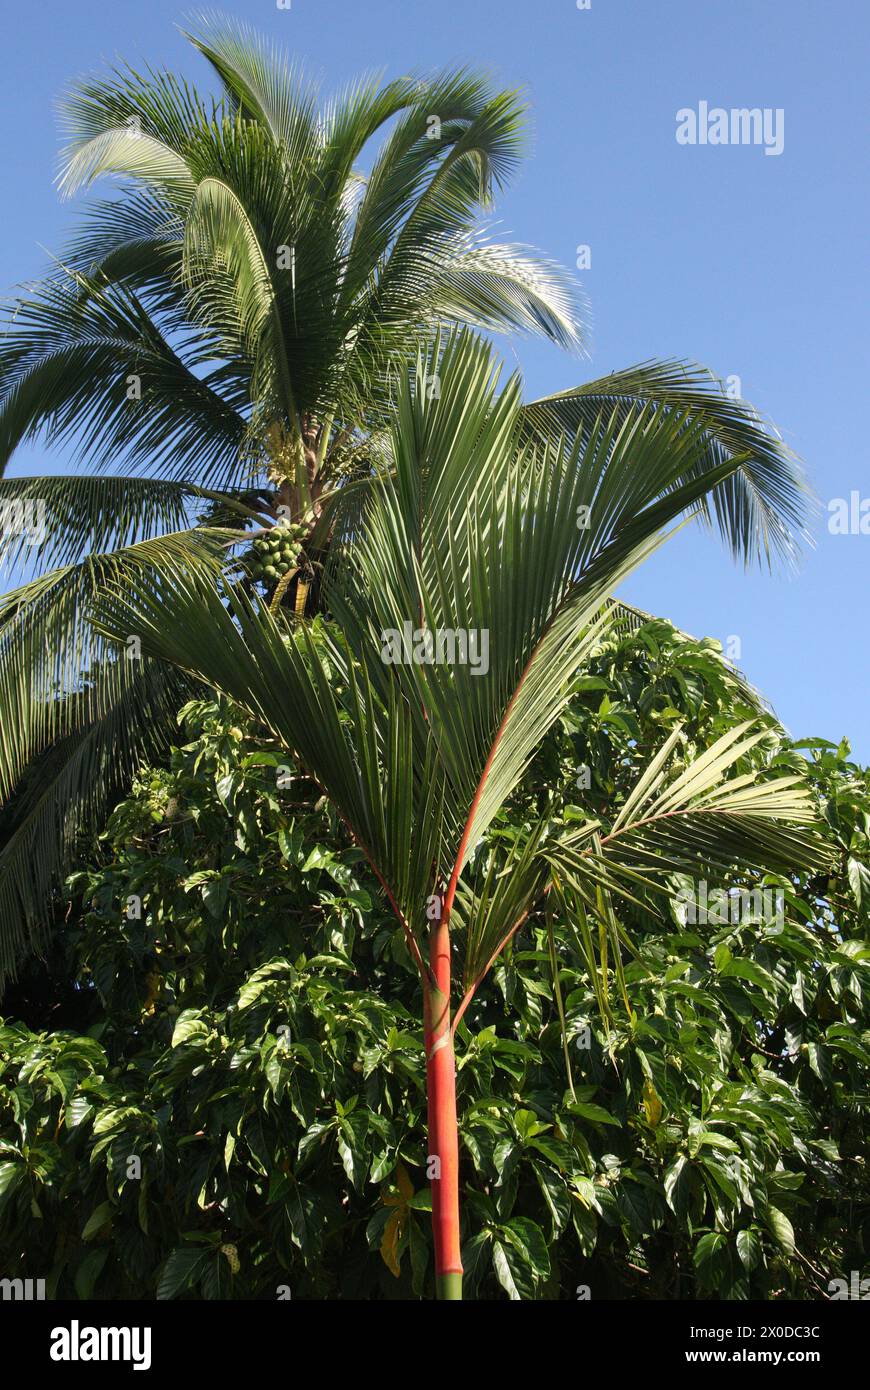 Red Sealing Wachspalme auch bekannt als Lippenstiftpalme oder Rajah Palm, Cyrtostachys renda, Arecaceae, Palmae. Tortuguero, Costa Rica. Stockfoto